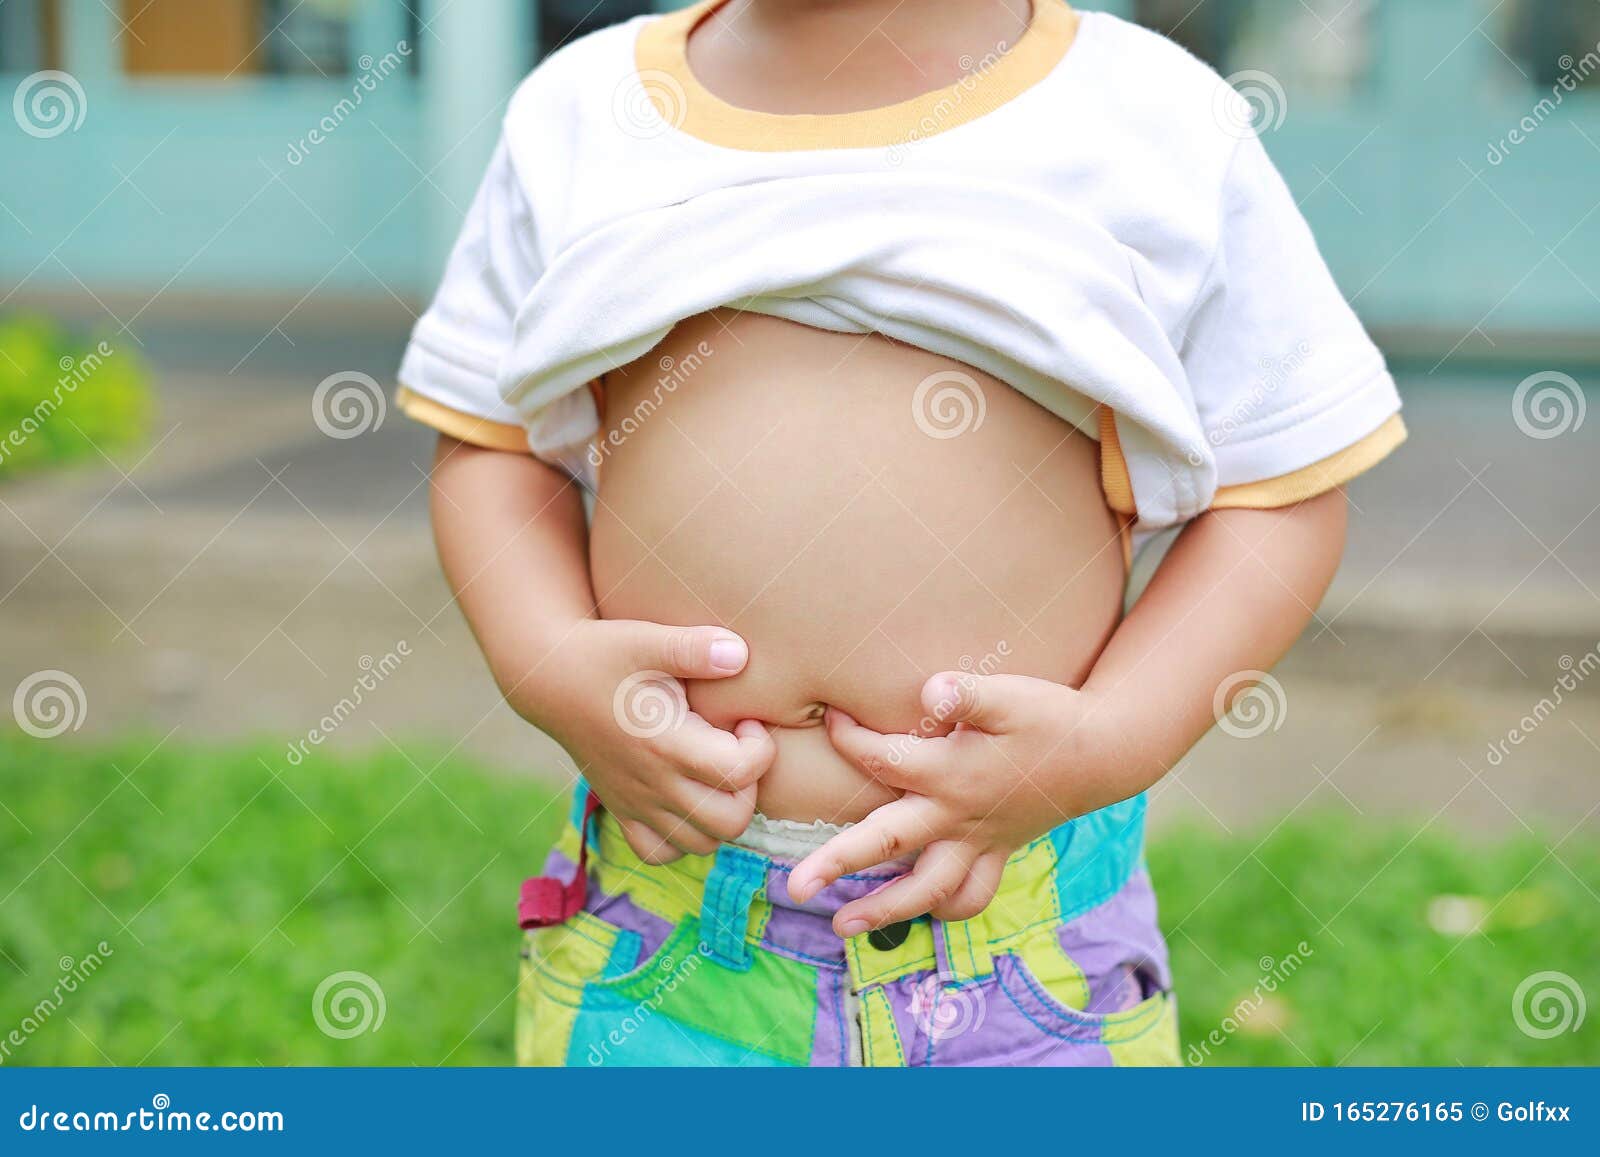 婴儿腹部按摩手法（新生儿抚触手法详细图解及注意事项）-幼儿百科-魔术铺